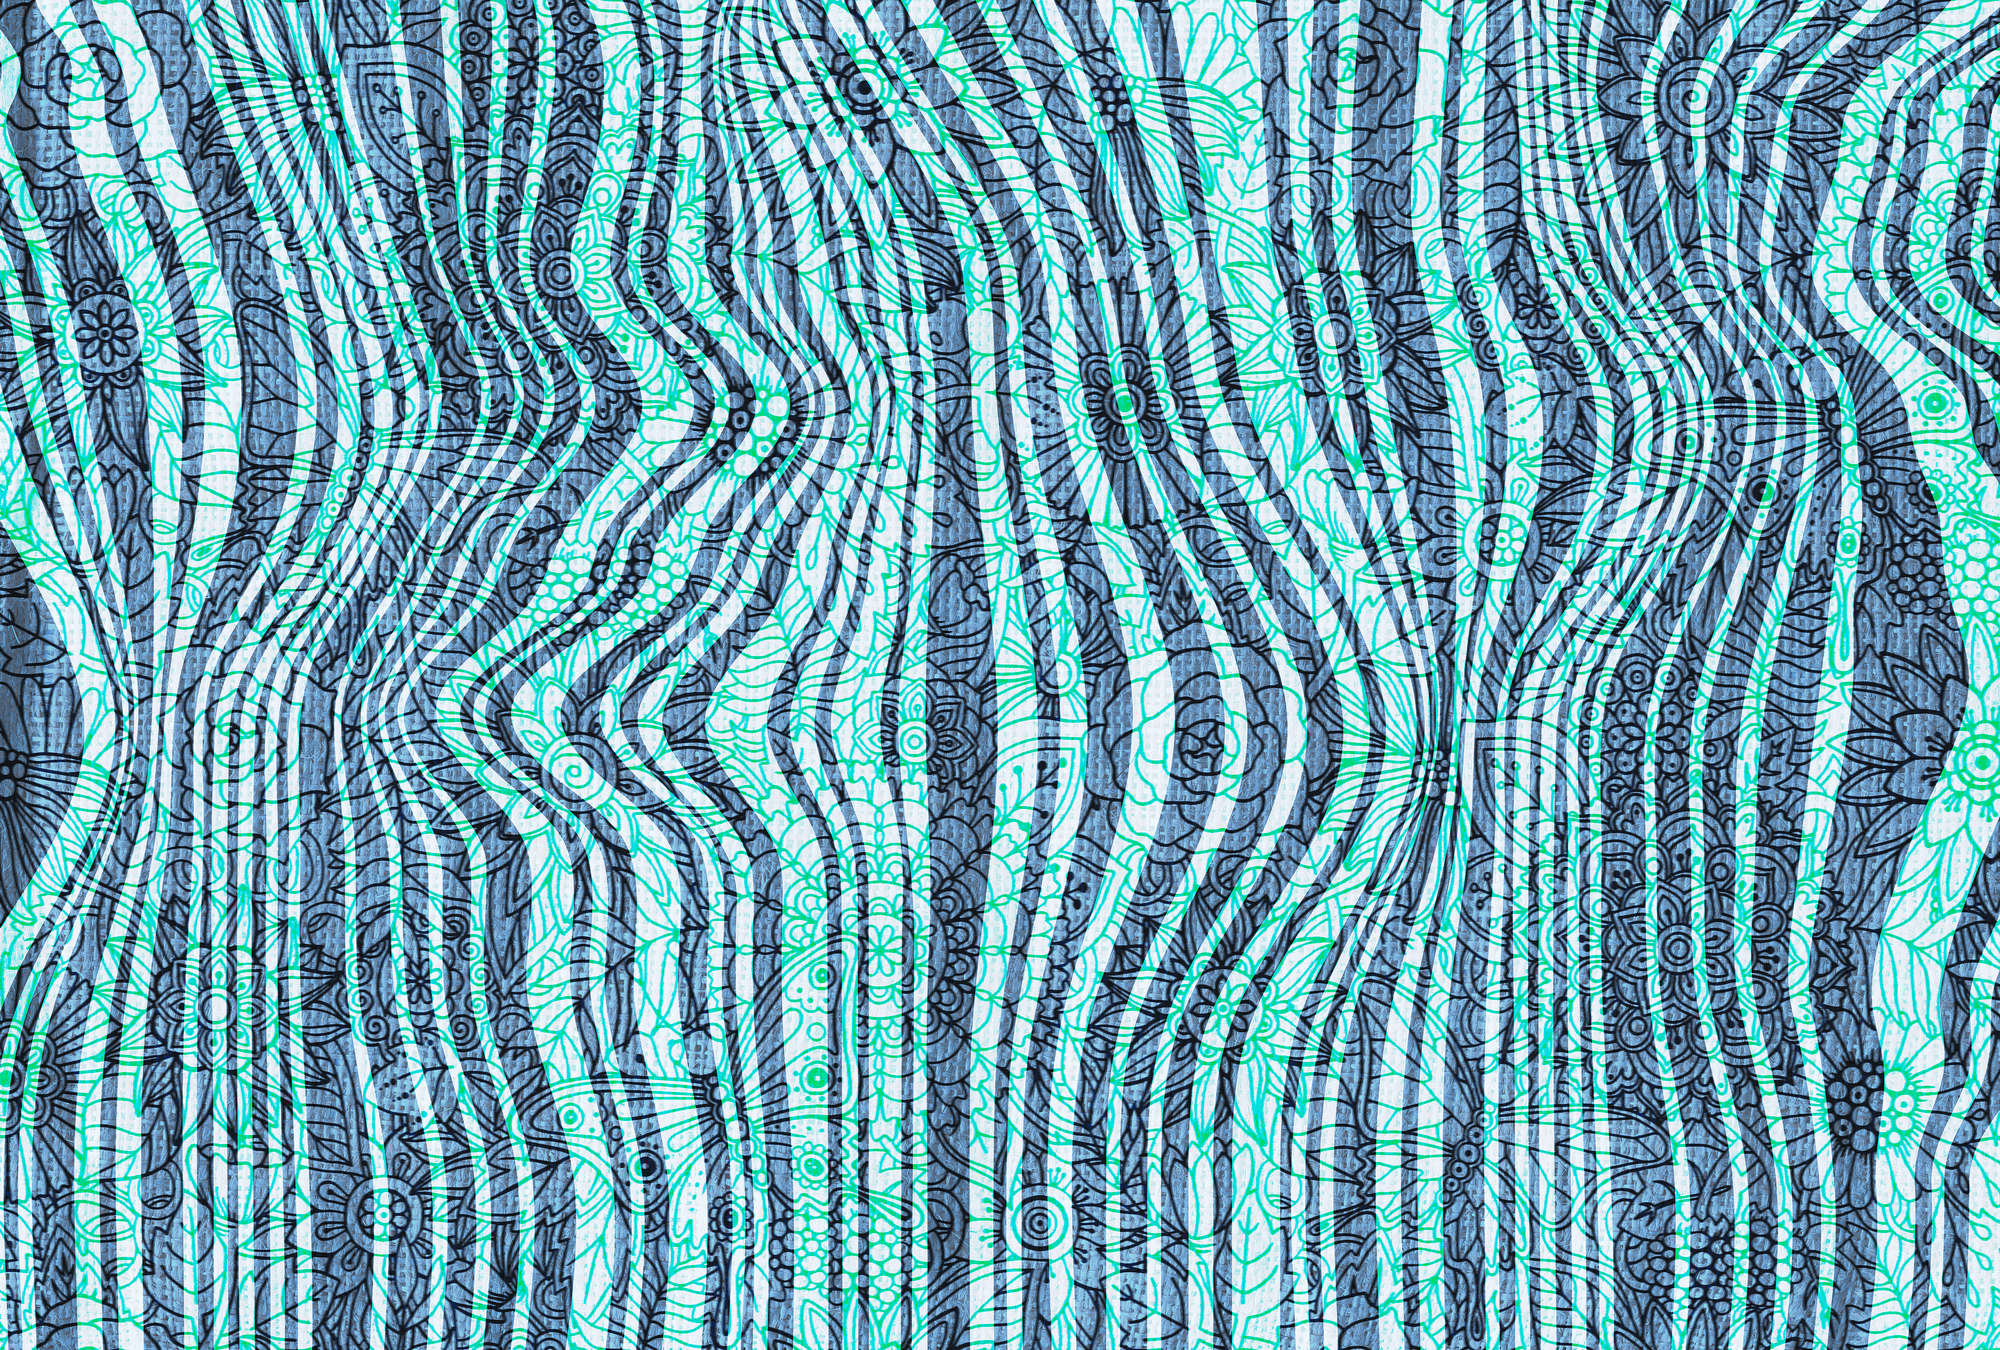             Papier peint Doodle design, motif de lignes abstraites - bleu, vert, noir
        